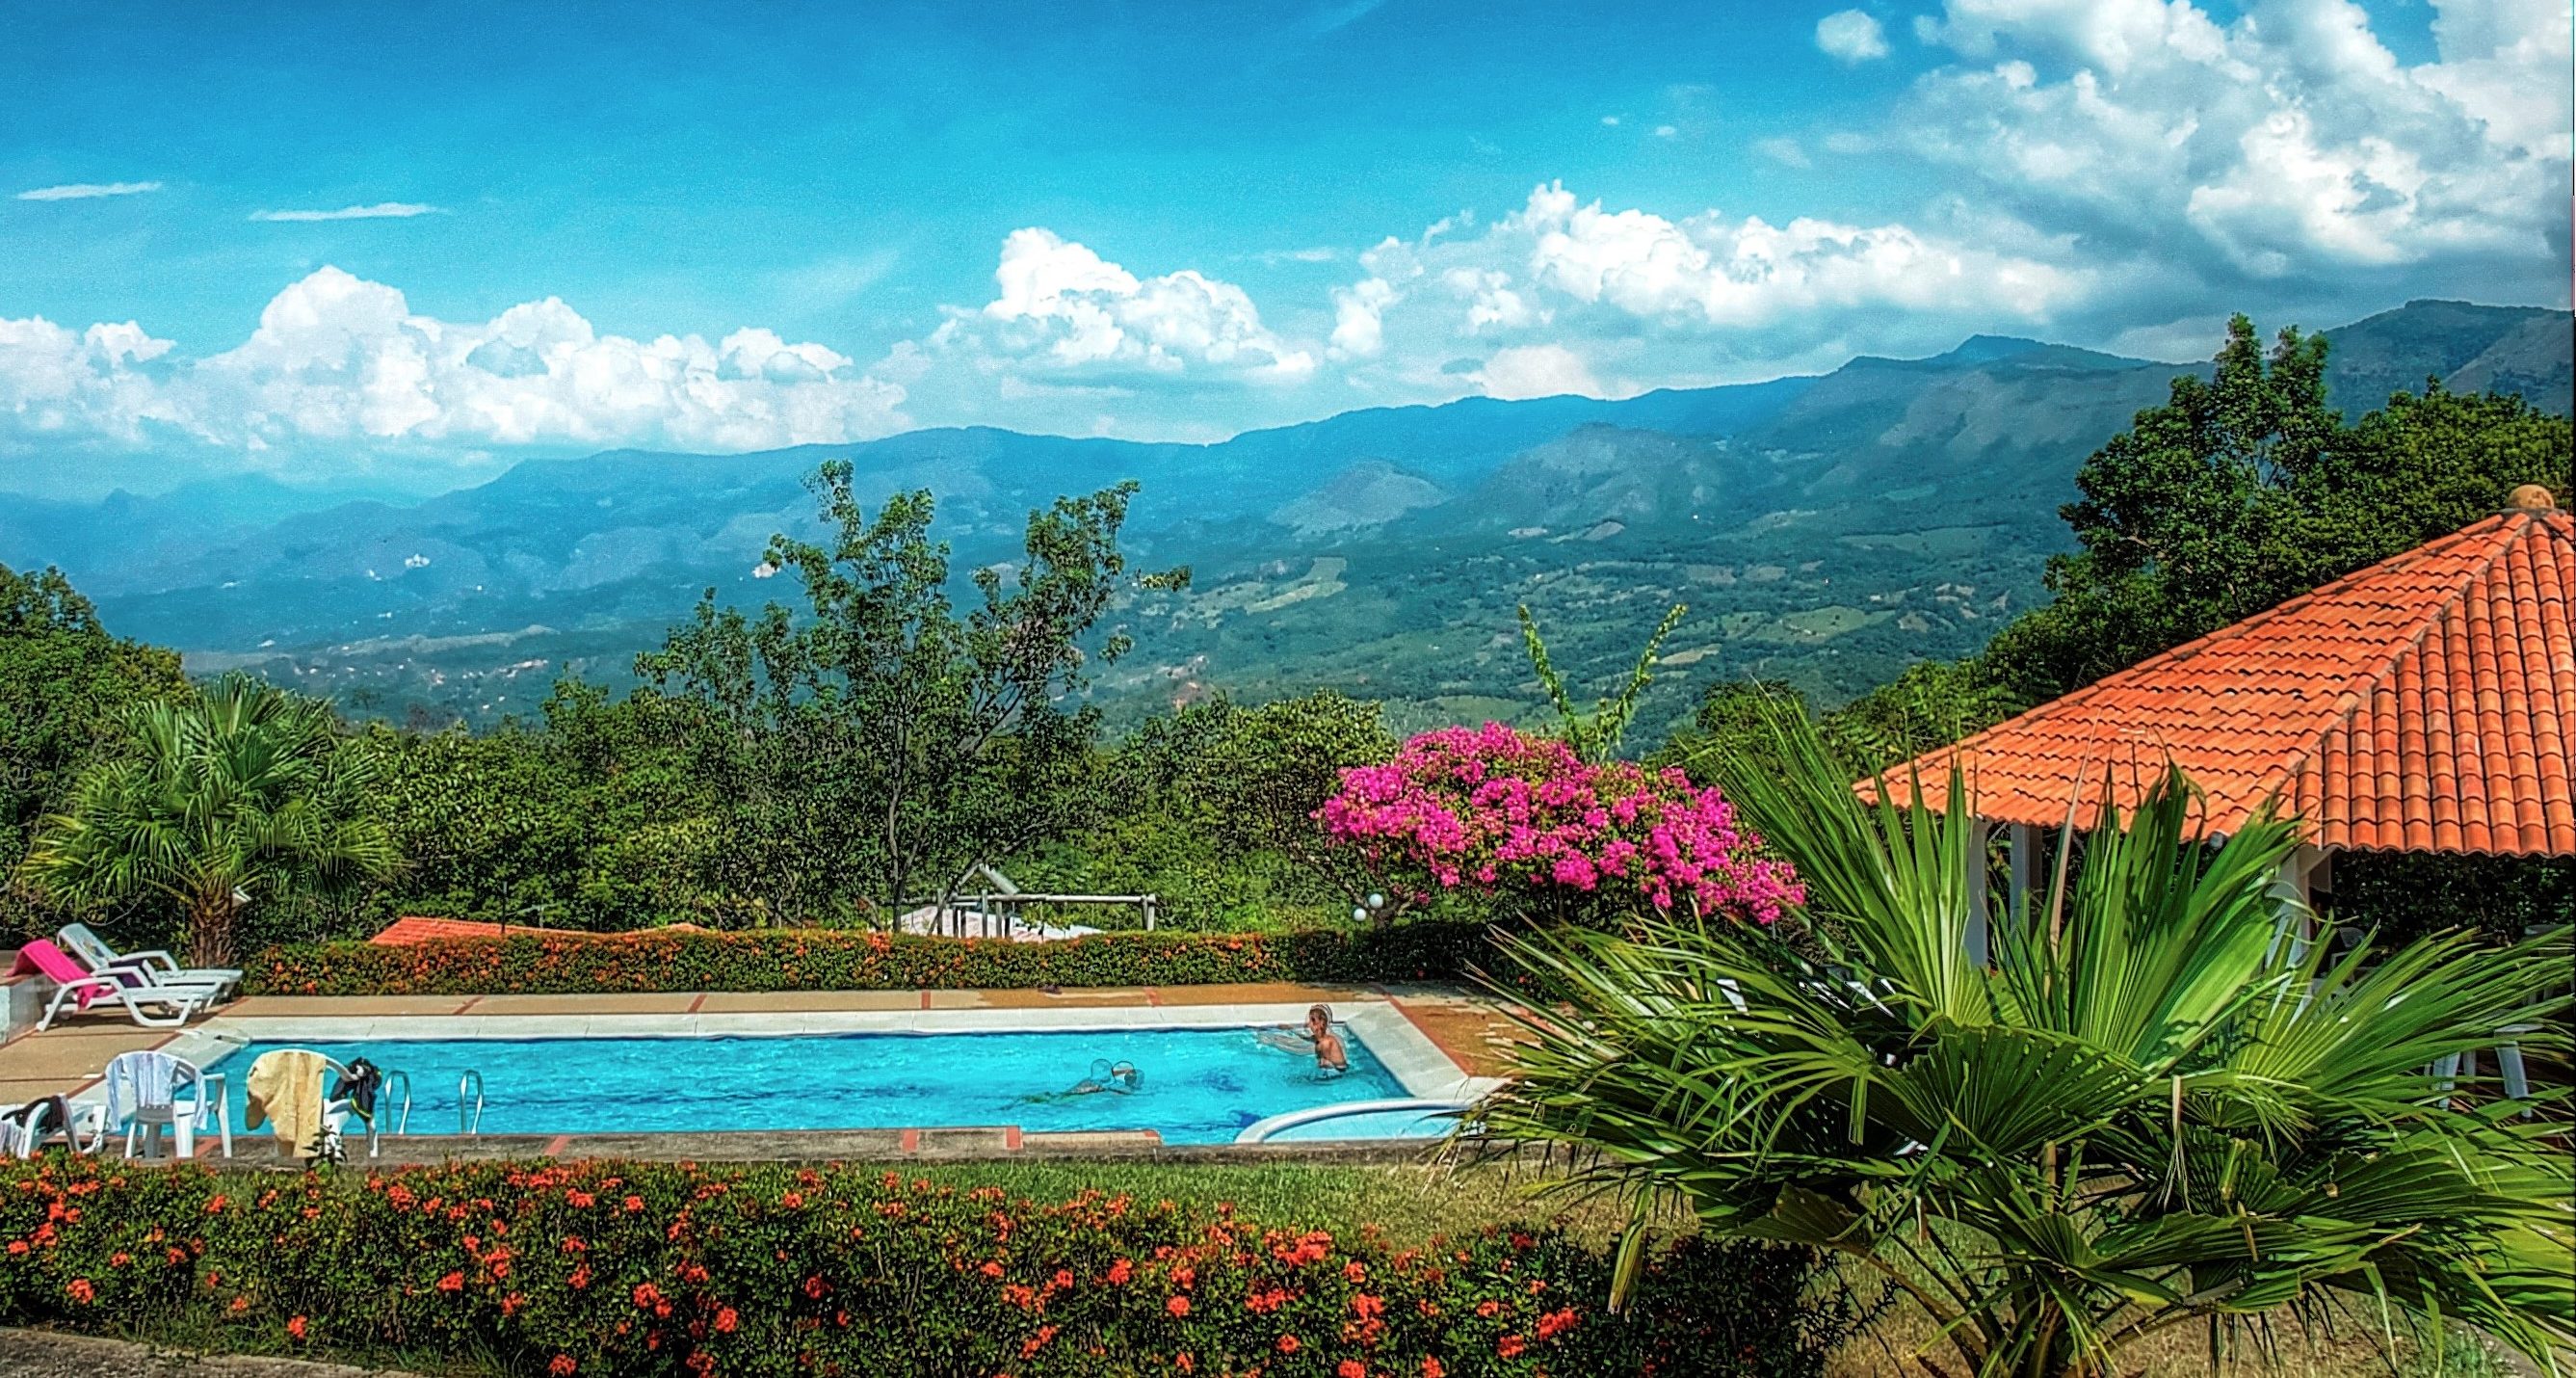 venta lotes y casas campestres colombia carmen de apicala fruworld panoramica vistas